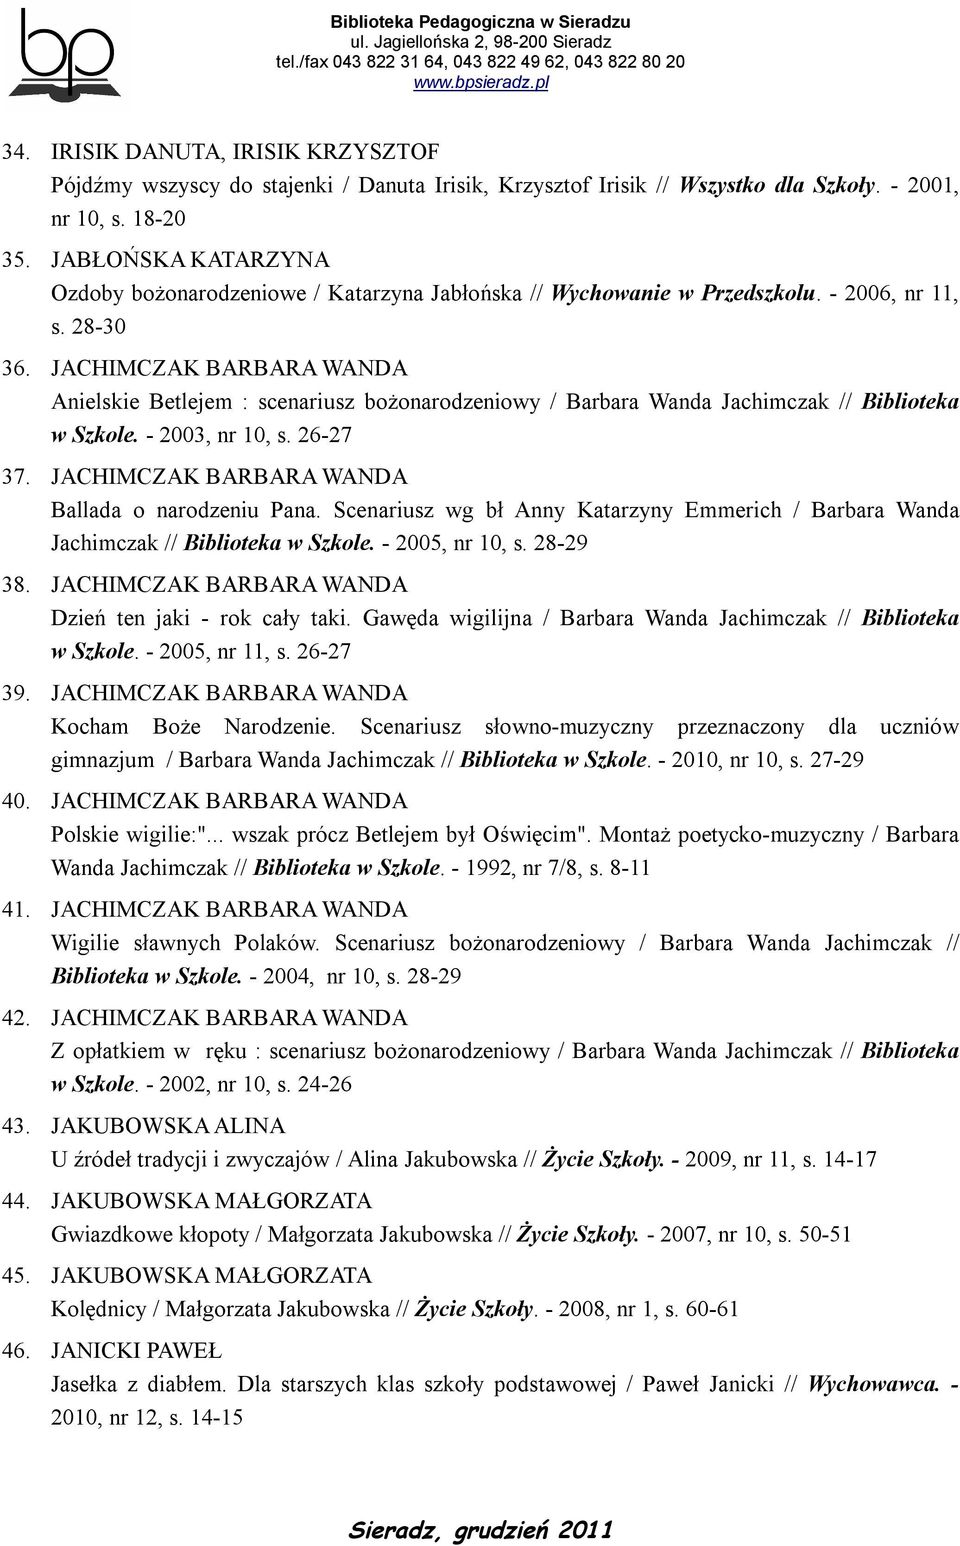 JACHIMCZAK BARBARA WANDA Anielskie Betlejem : scenariusz bożonarodzeniowy / Barbara Wanda Jachimczak // Biblioteka w Szkole. - 2003, nr 10, s. 26-27 37.